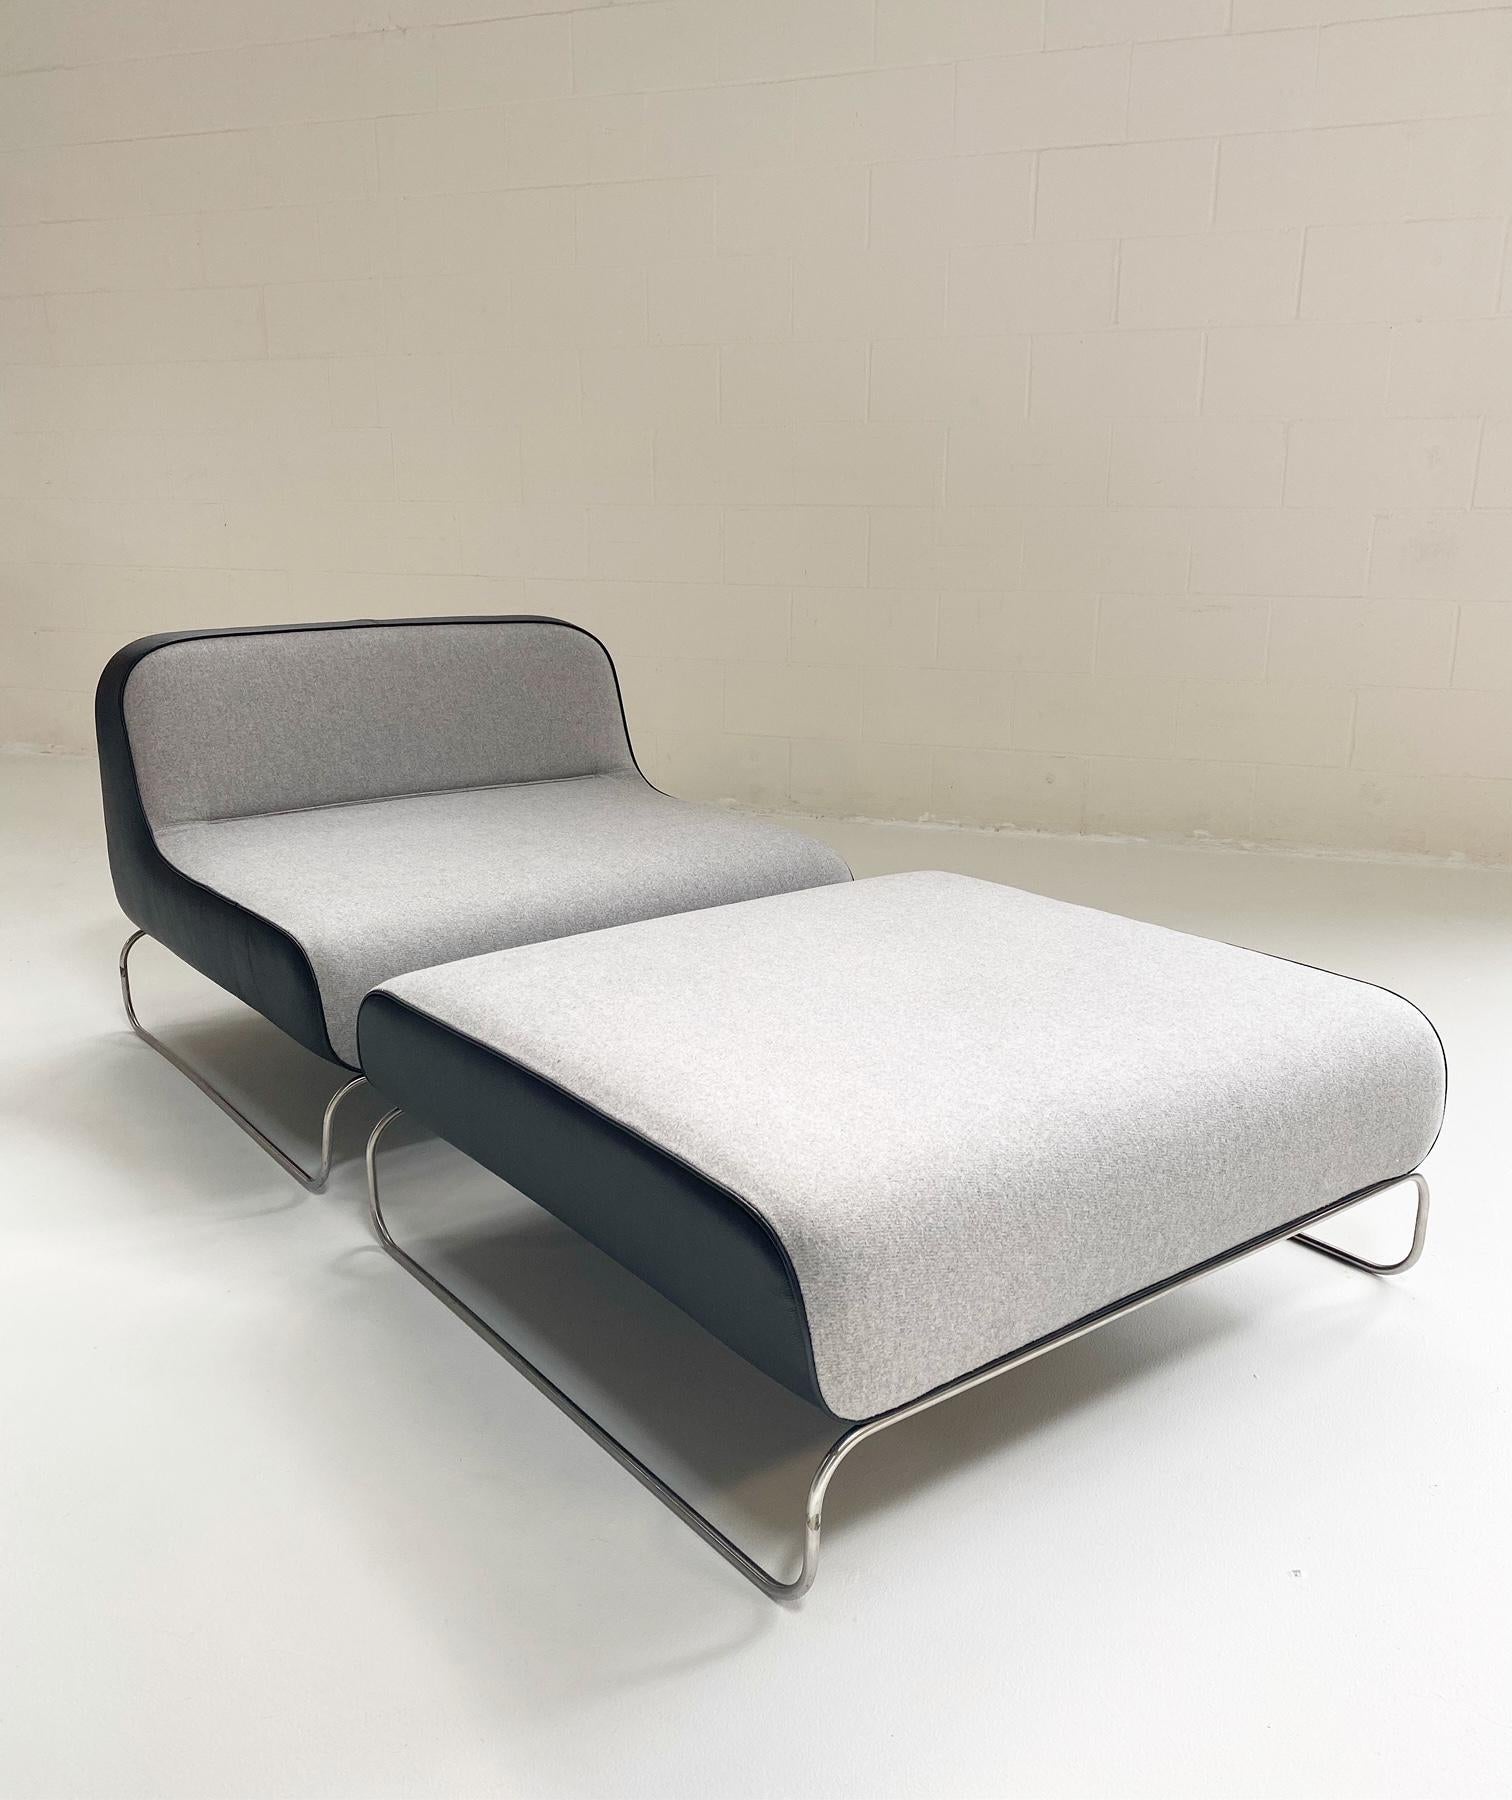 Piero Lissoni est un architecte et designer italien connu pour ses conceptions de meubles contemporains larges et bas. Nous adorons cet ensemble ! C'est le salon profond idéal pour faire la sieste, lire ou tout simplement se prélasser. La sellerie